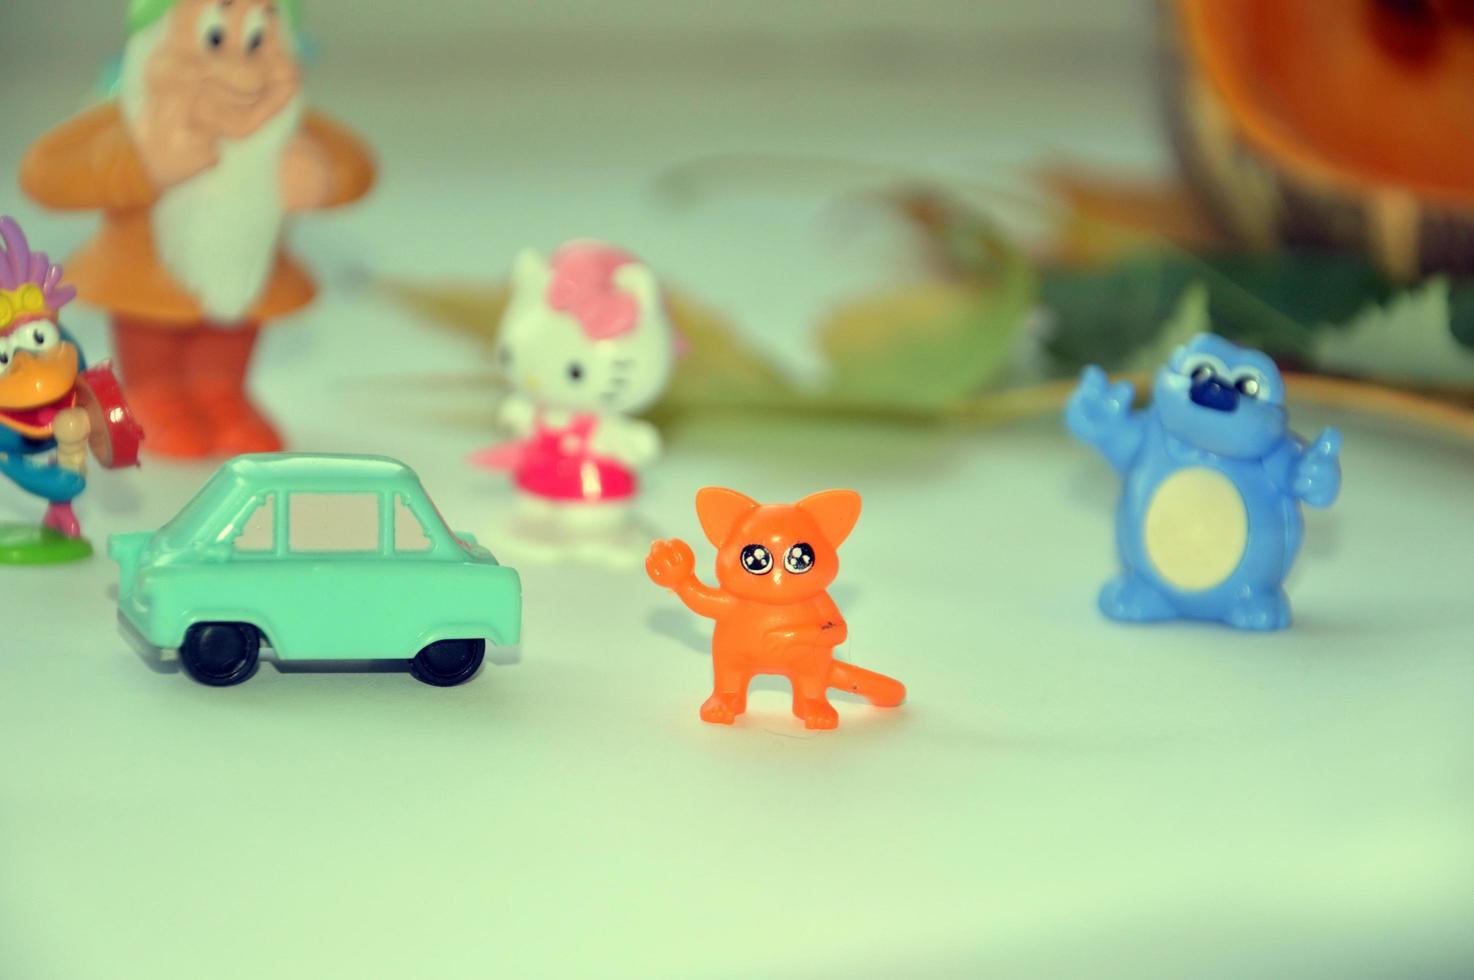 kiev, ucrania, 2020 - varios juguetes para niños pequeños alineados para halloween foto